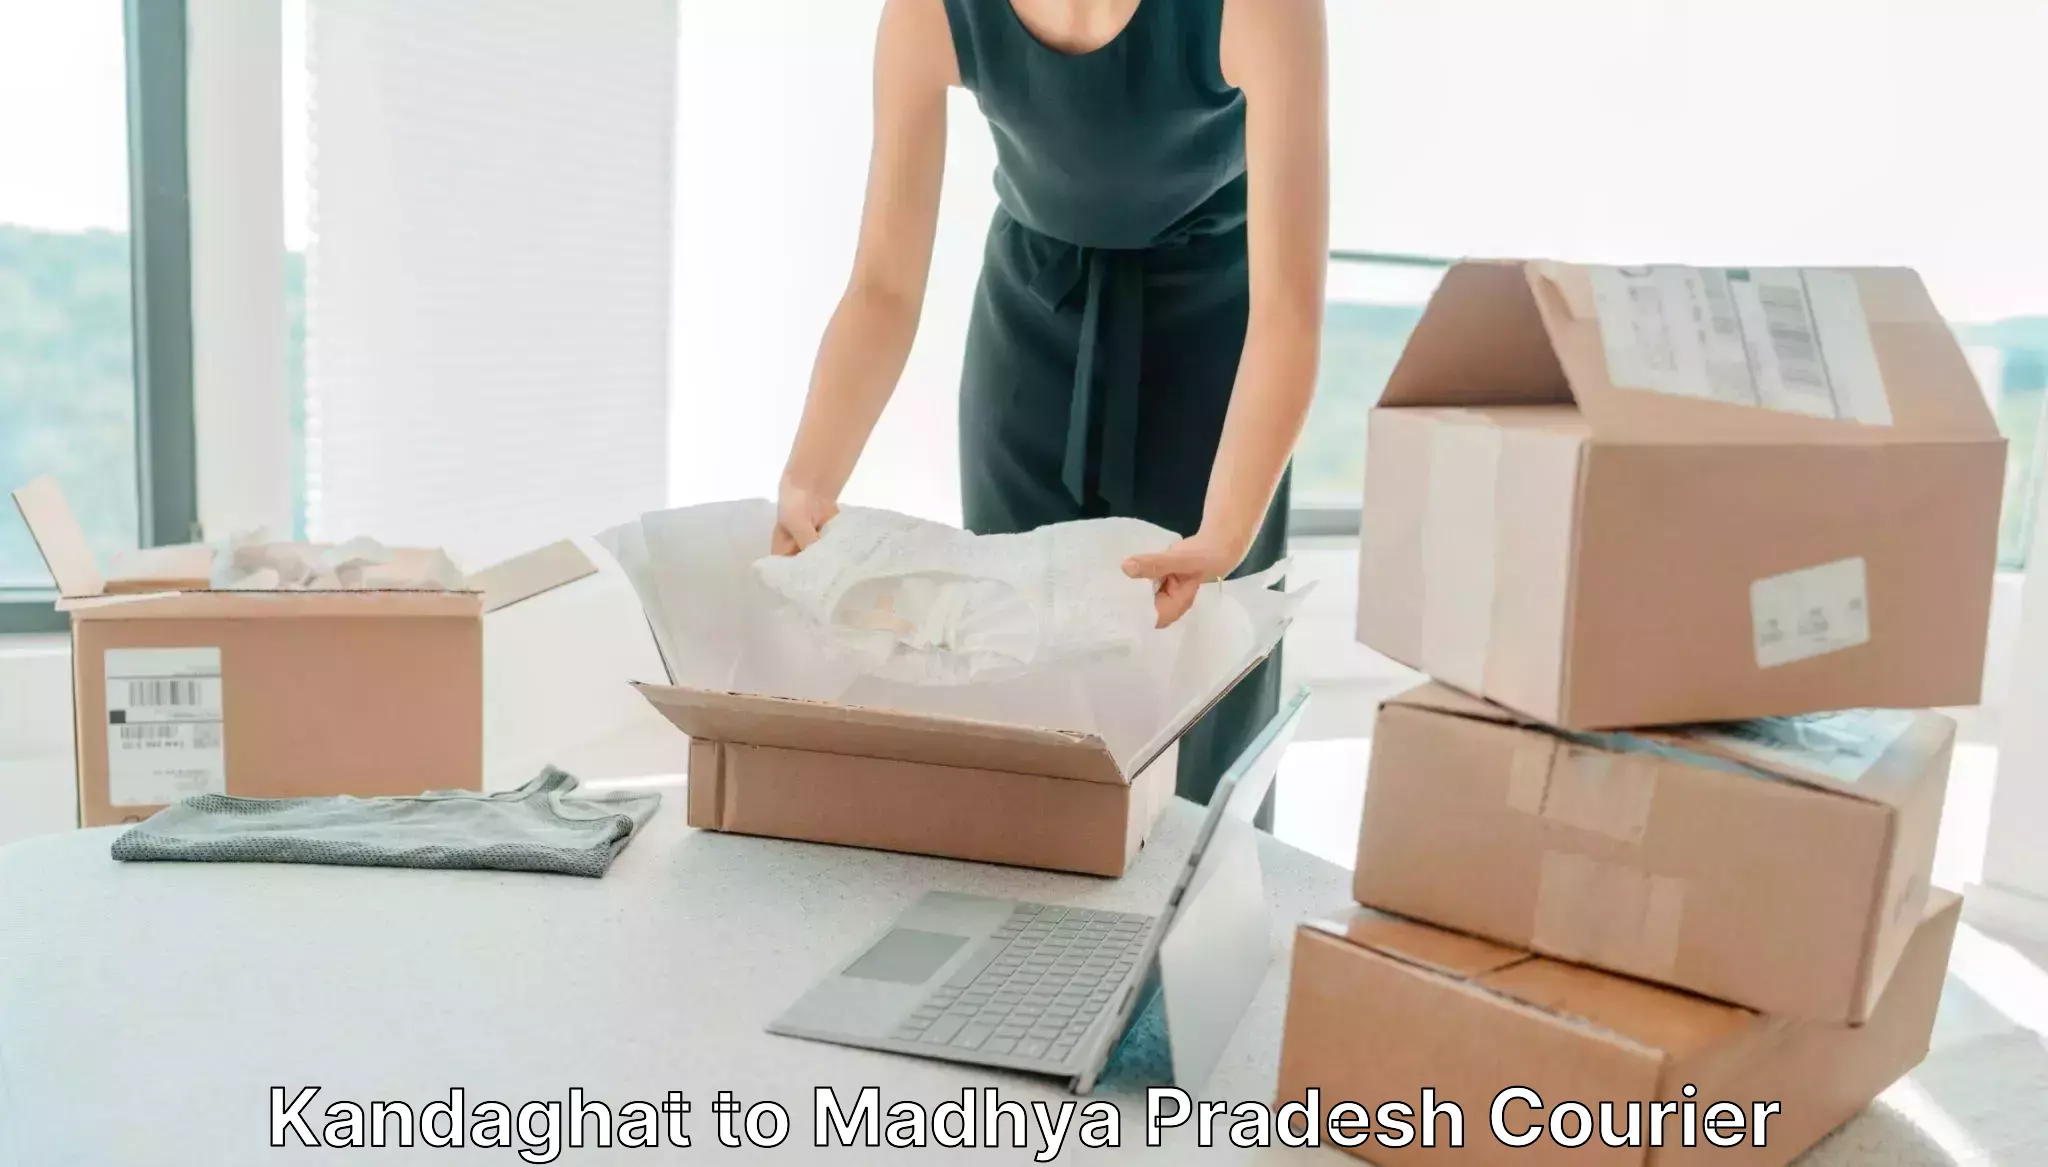 Custom courier packaging in Kandaghat to Lavkush Nagar